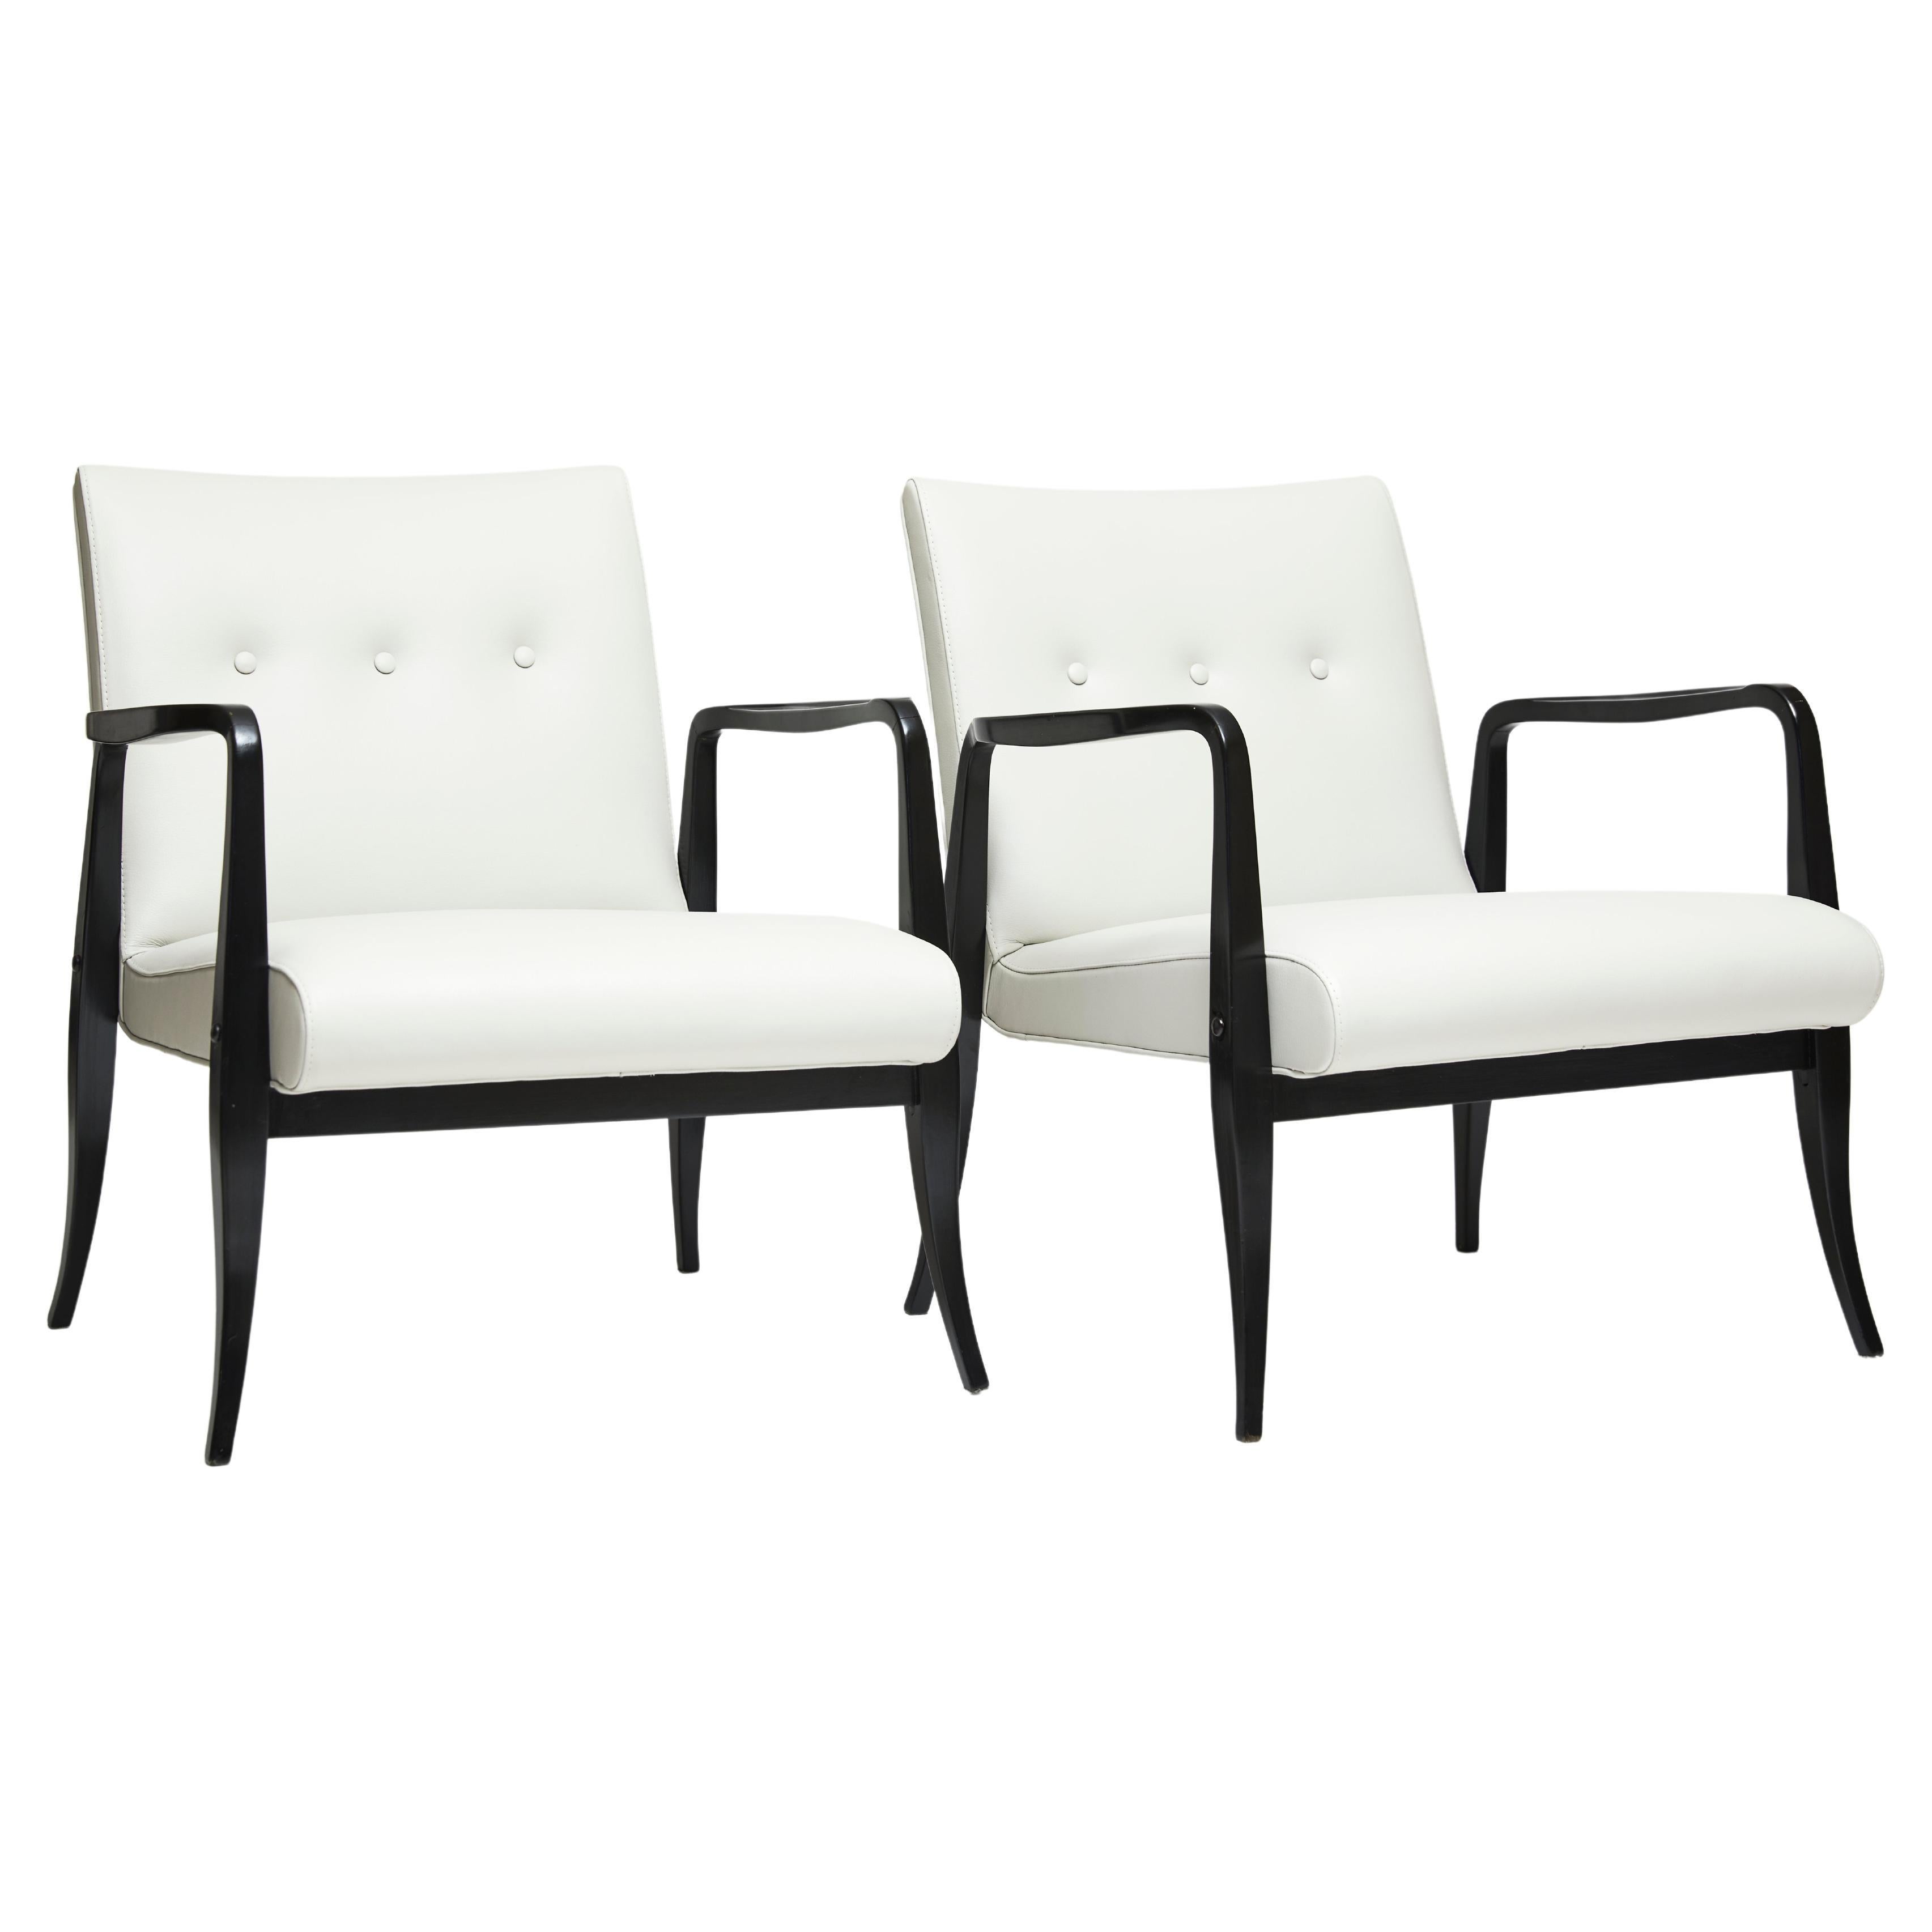 Disponible dès maintenant, cette belle paire de fauteuils brésiliens modernes est fabriquée en bois dur de Pau Marfim ébénisé et en cuir blanc dans le style buttone. 

La structure est composée de bras et de pieds incurvés, et a été conçue par